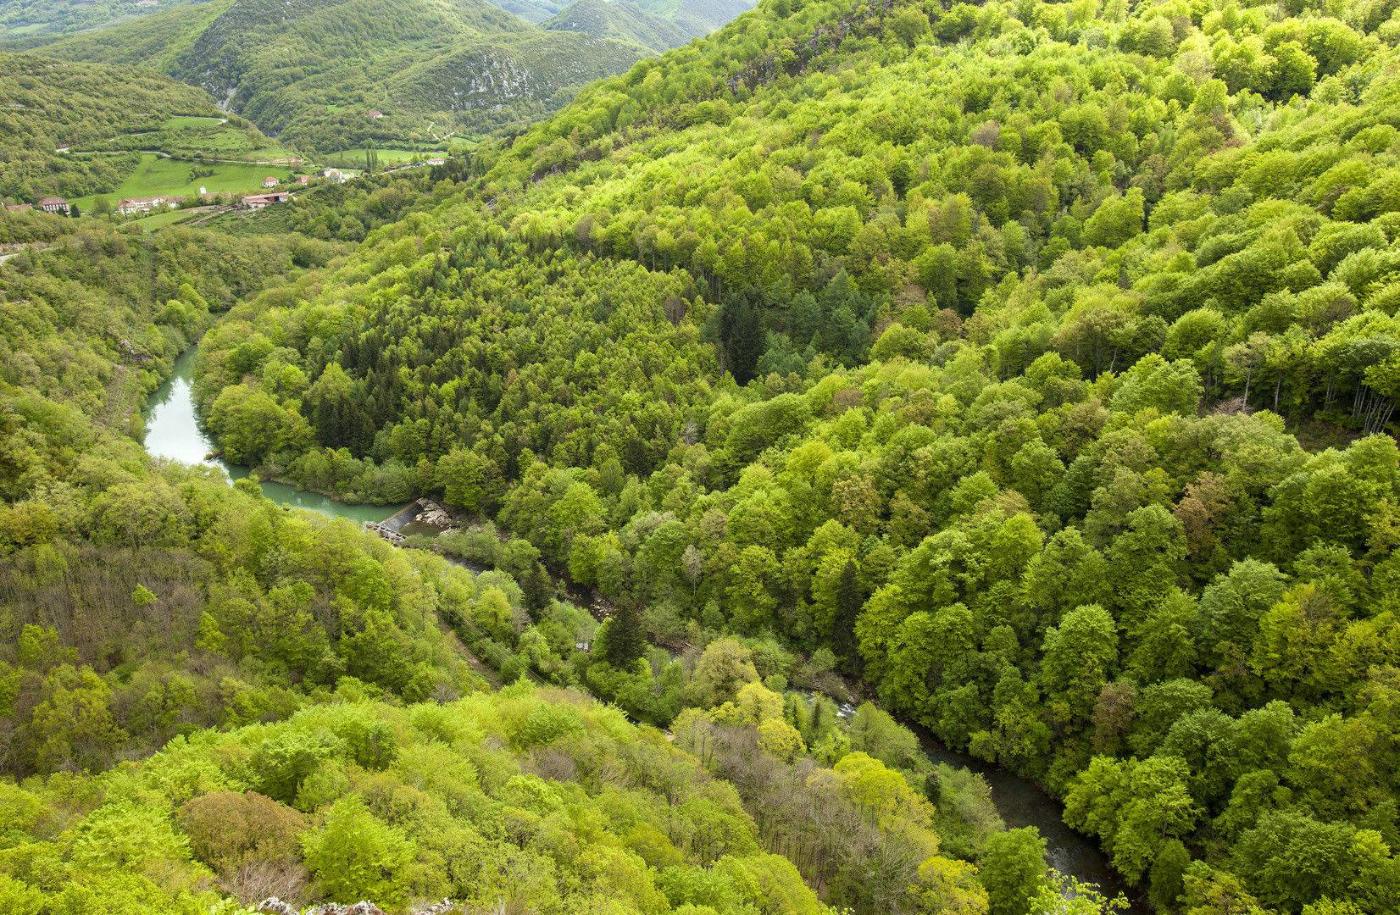 Landscape with river in the Irati Jungle